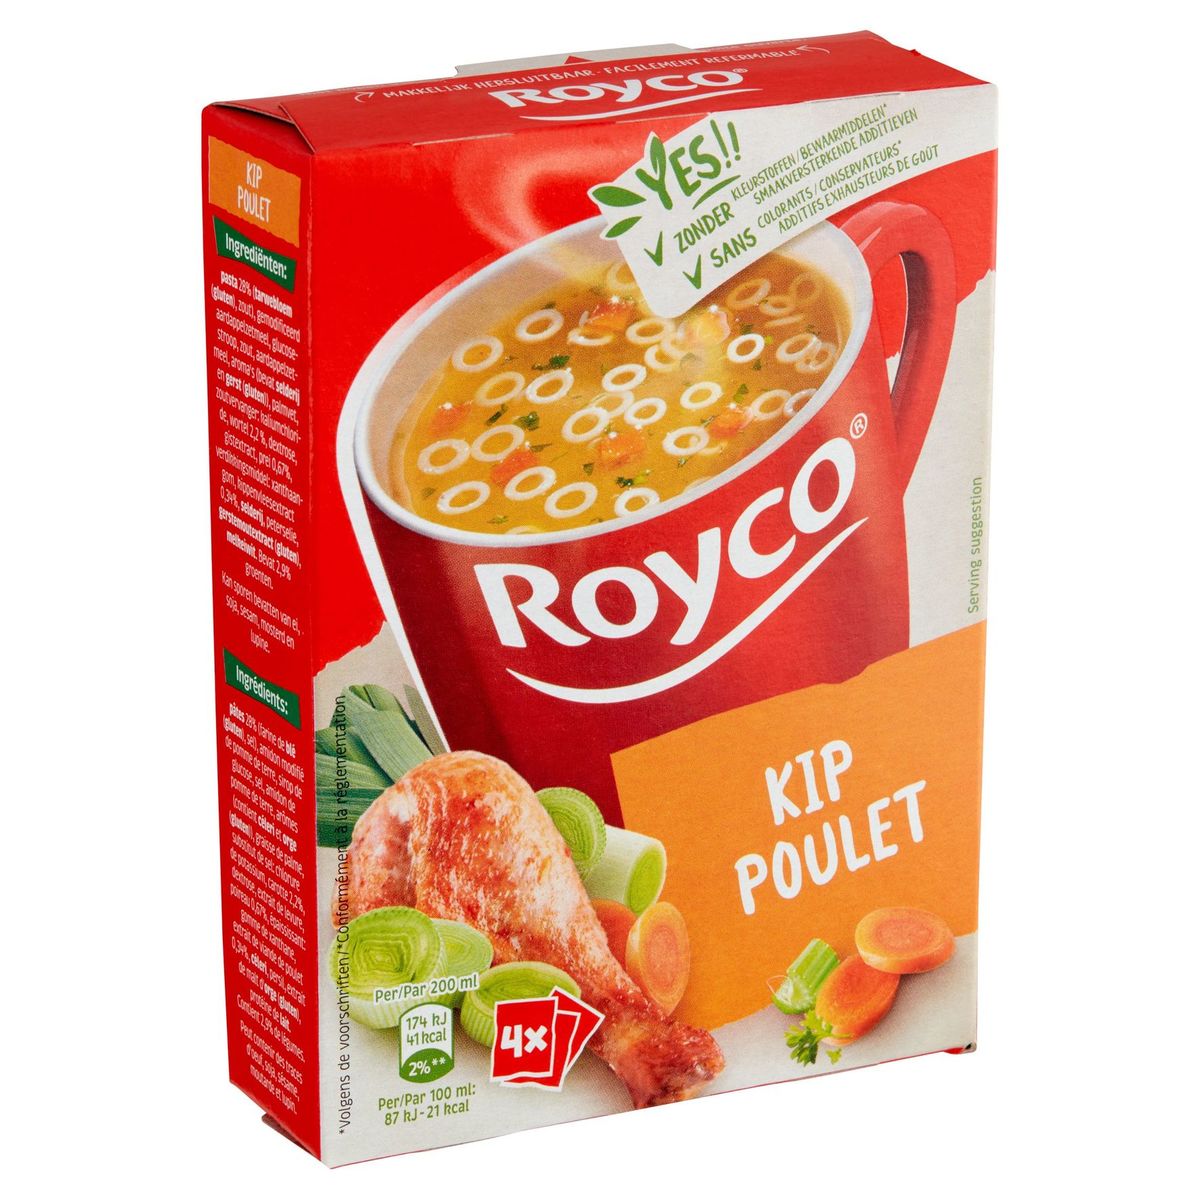 Royco Poulet 4 x 11.7 g